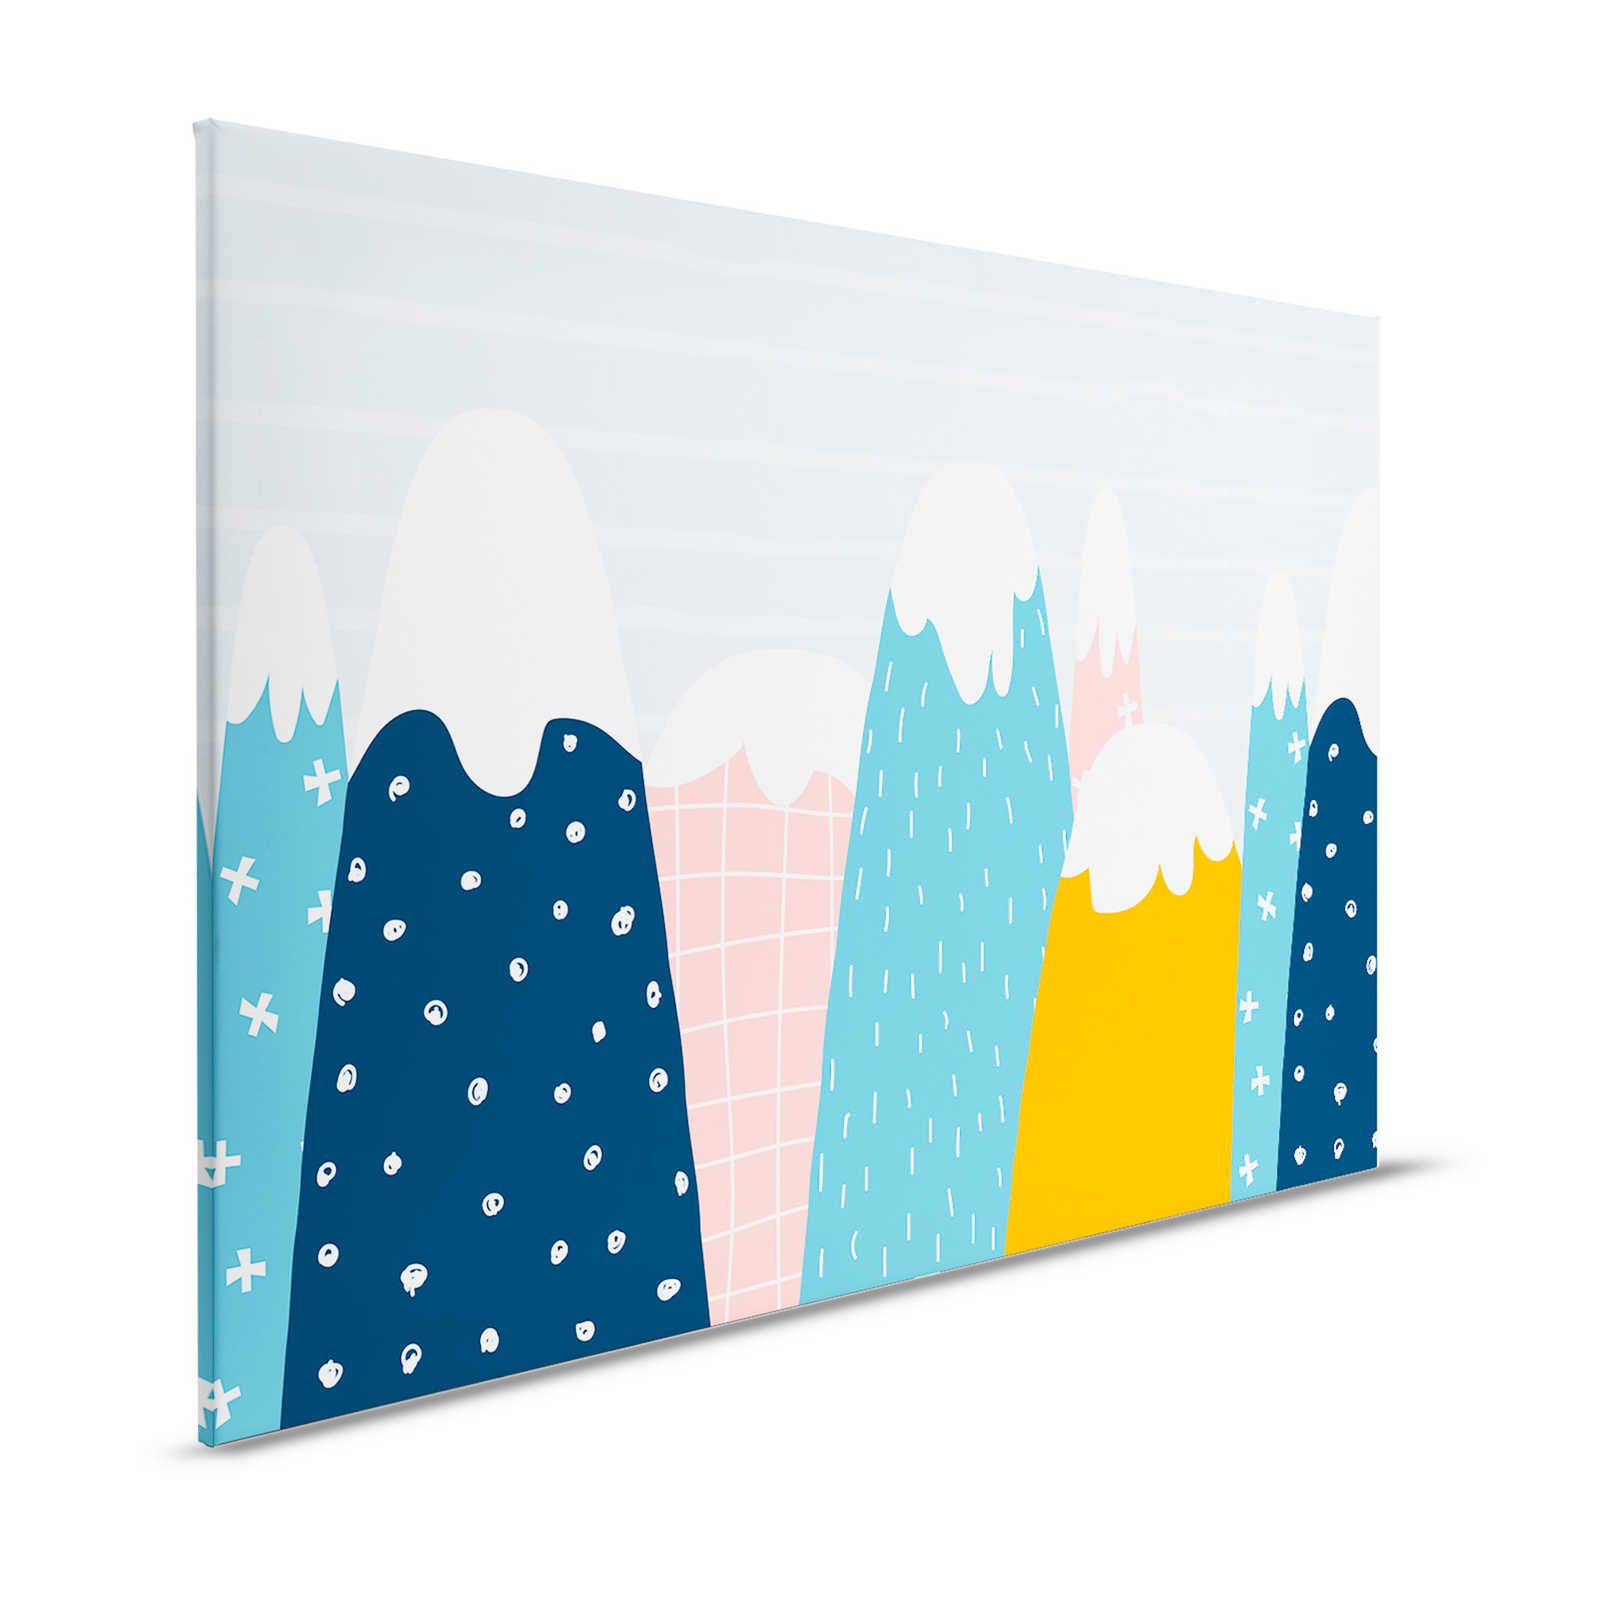 Canvas met besneeuwde heuvels in geschilderde stijl - 120 cm x 80 cm
